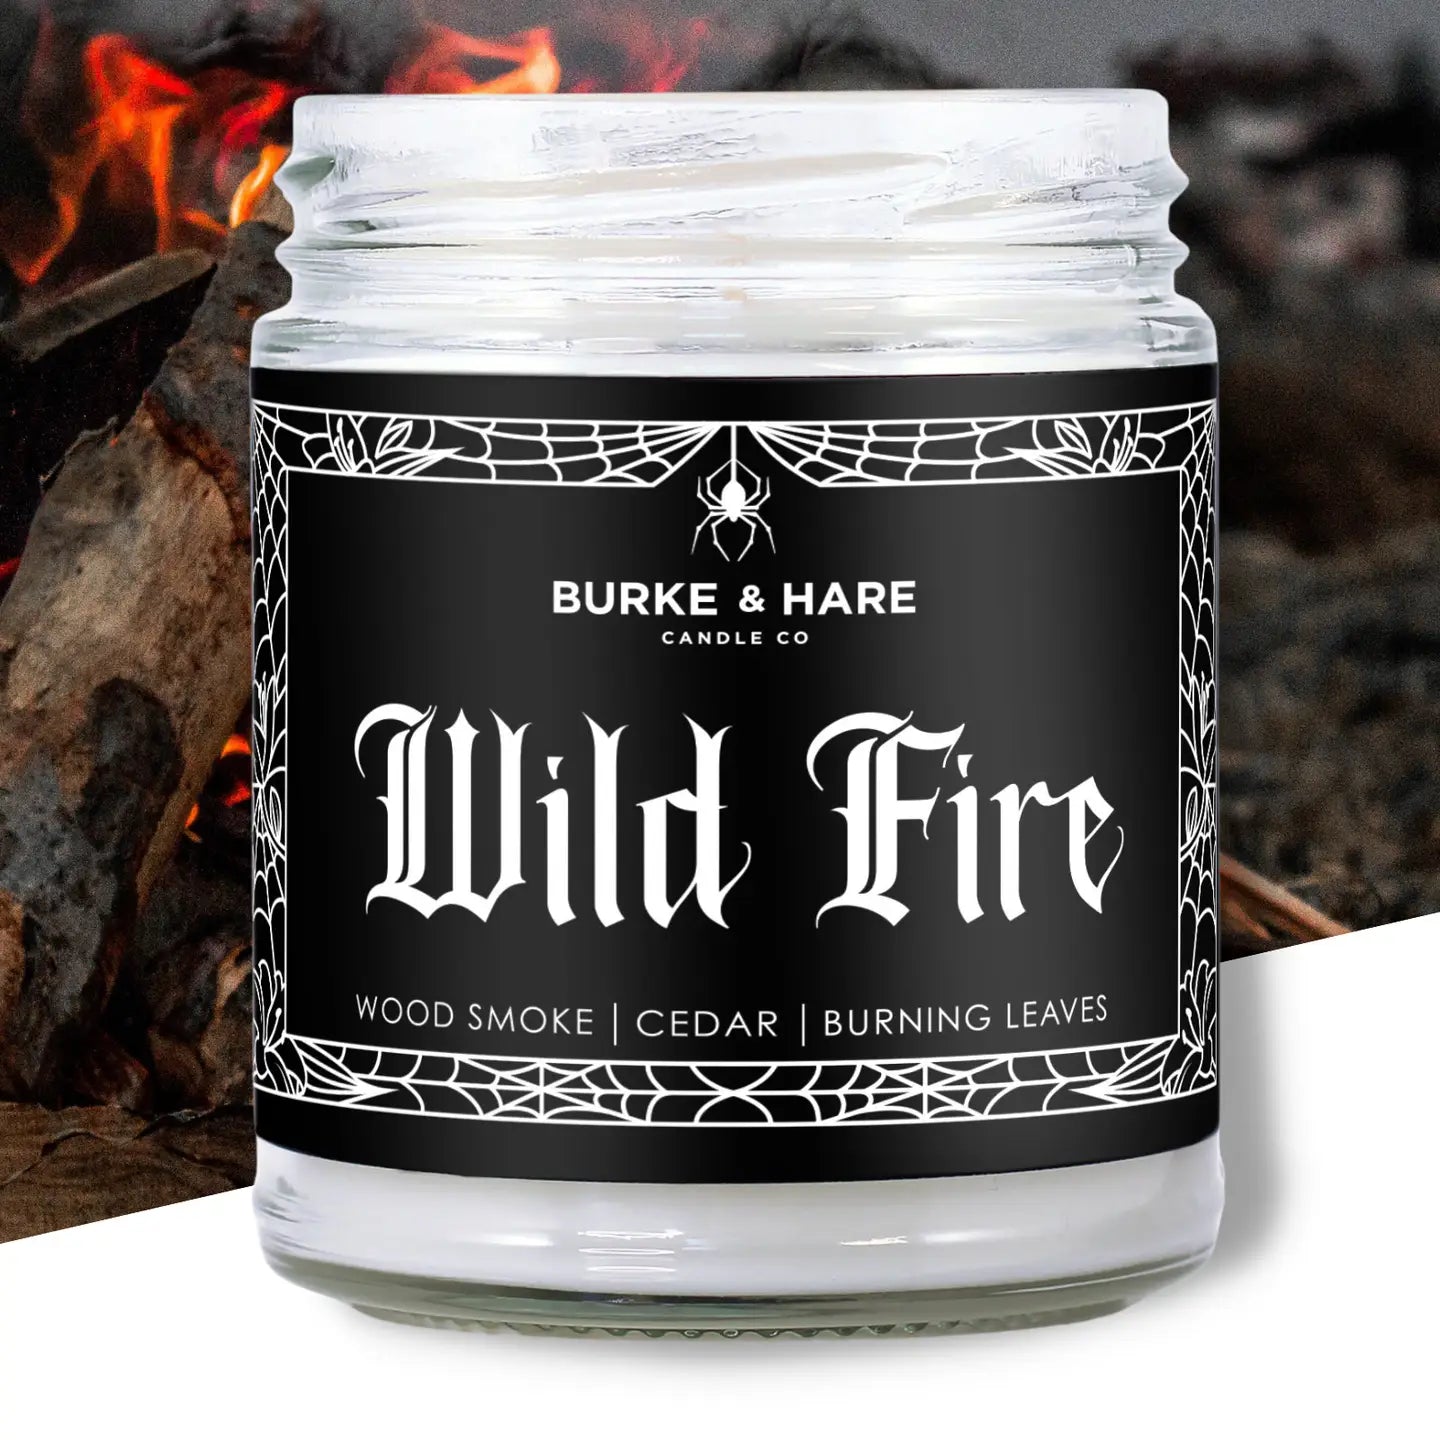 Burke & Hare Co. "Wild Fire" Bonfire + Spice Candle *PRE-ORDER*